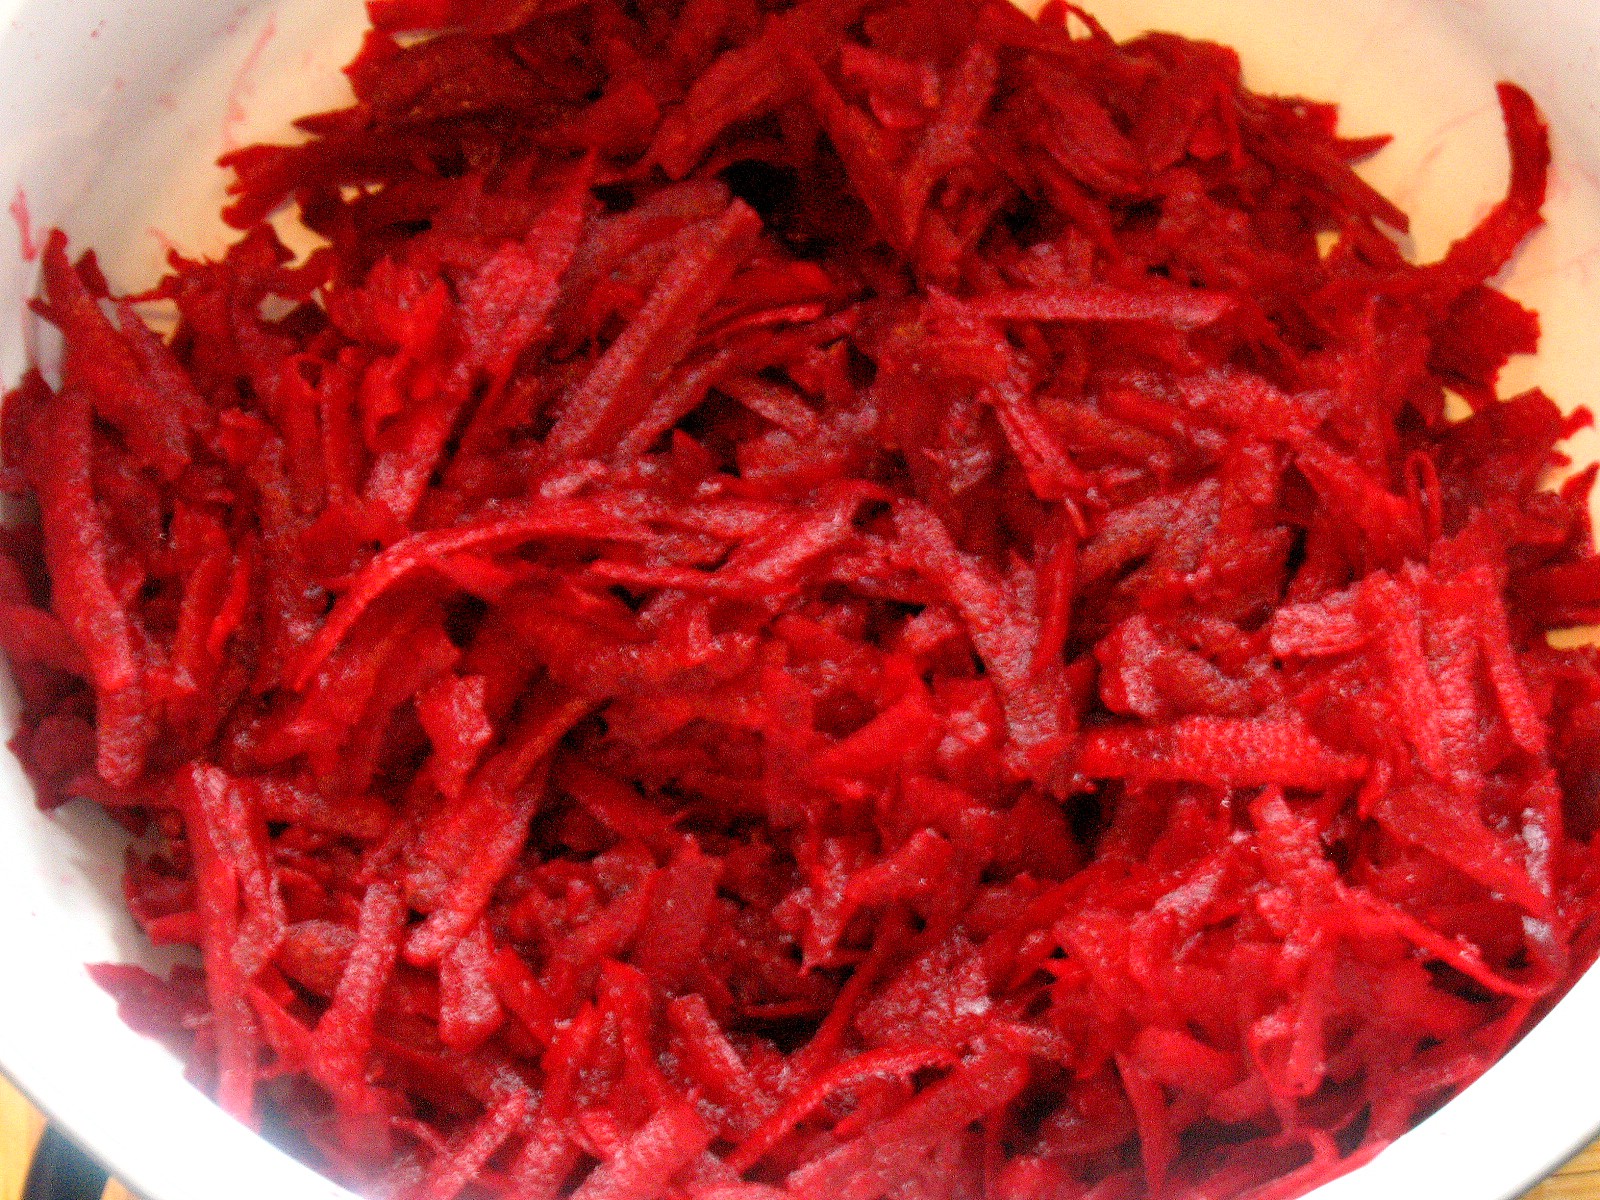 Ciorba de sfecla rosie, arome bogate și culoare intr-un preparat traditional romanesc